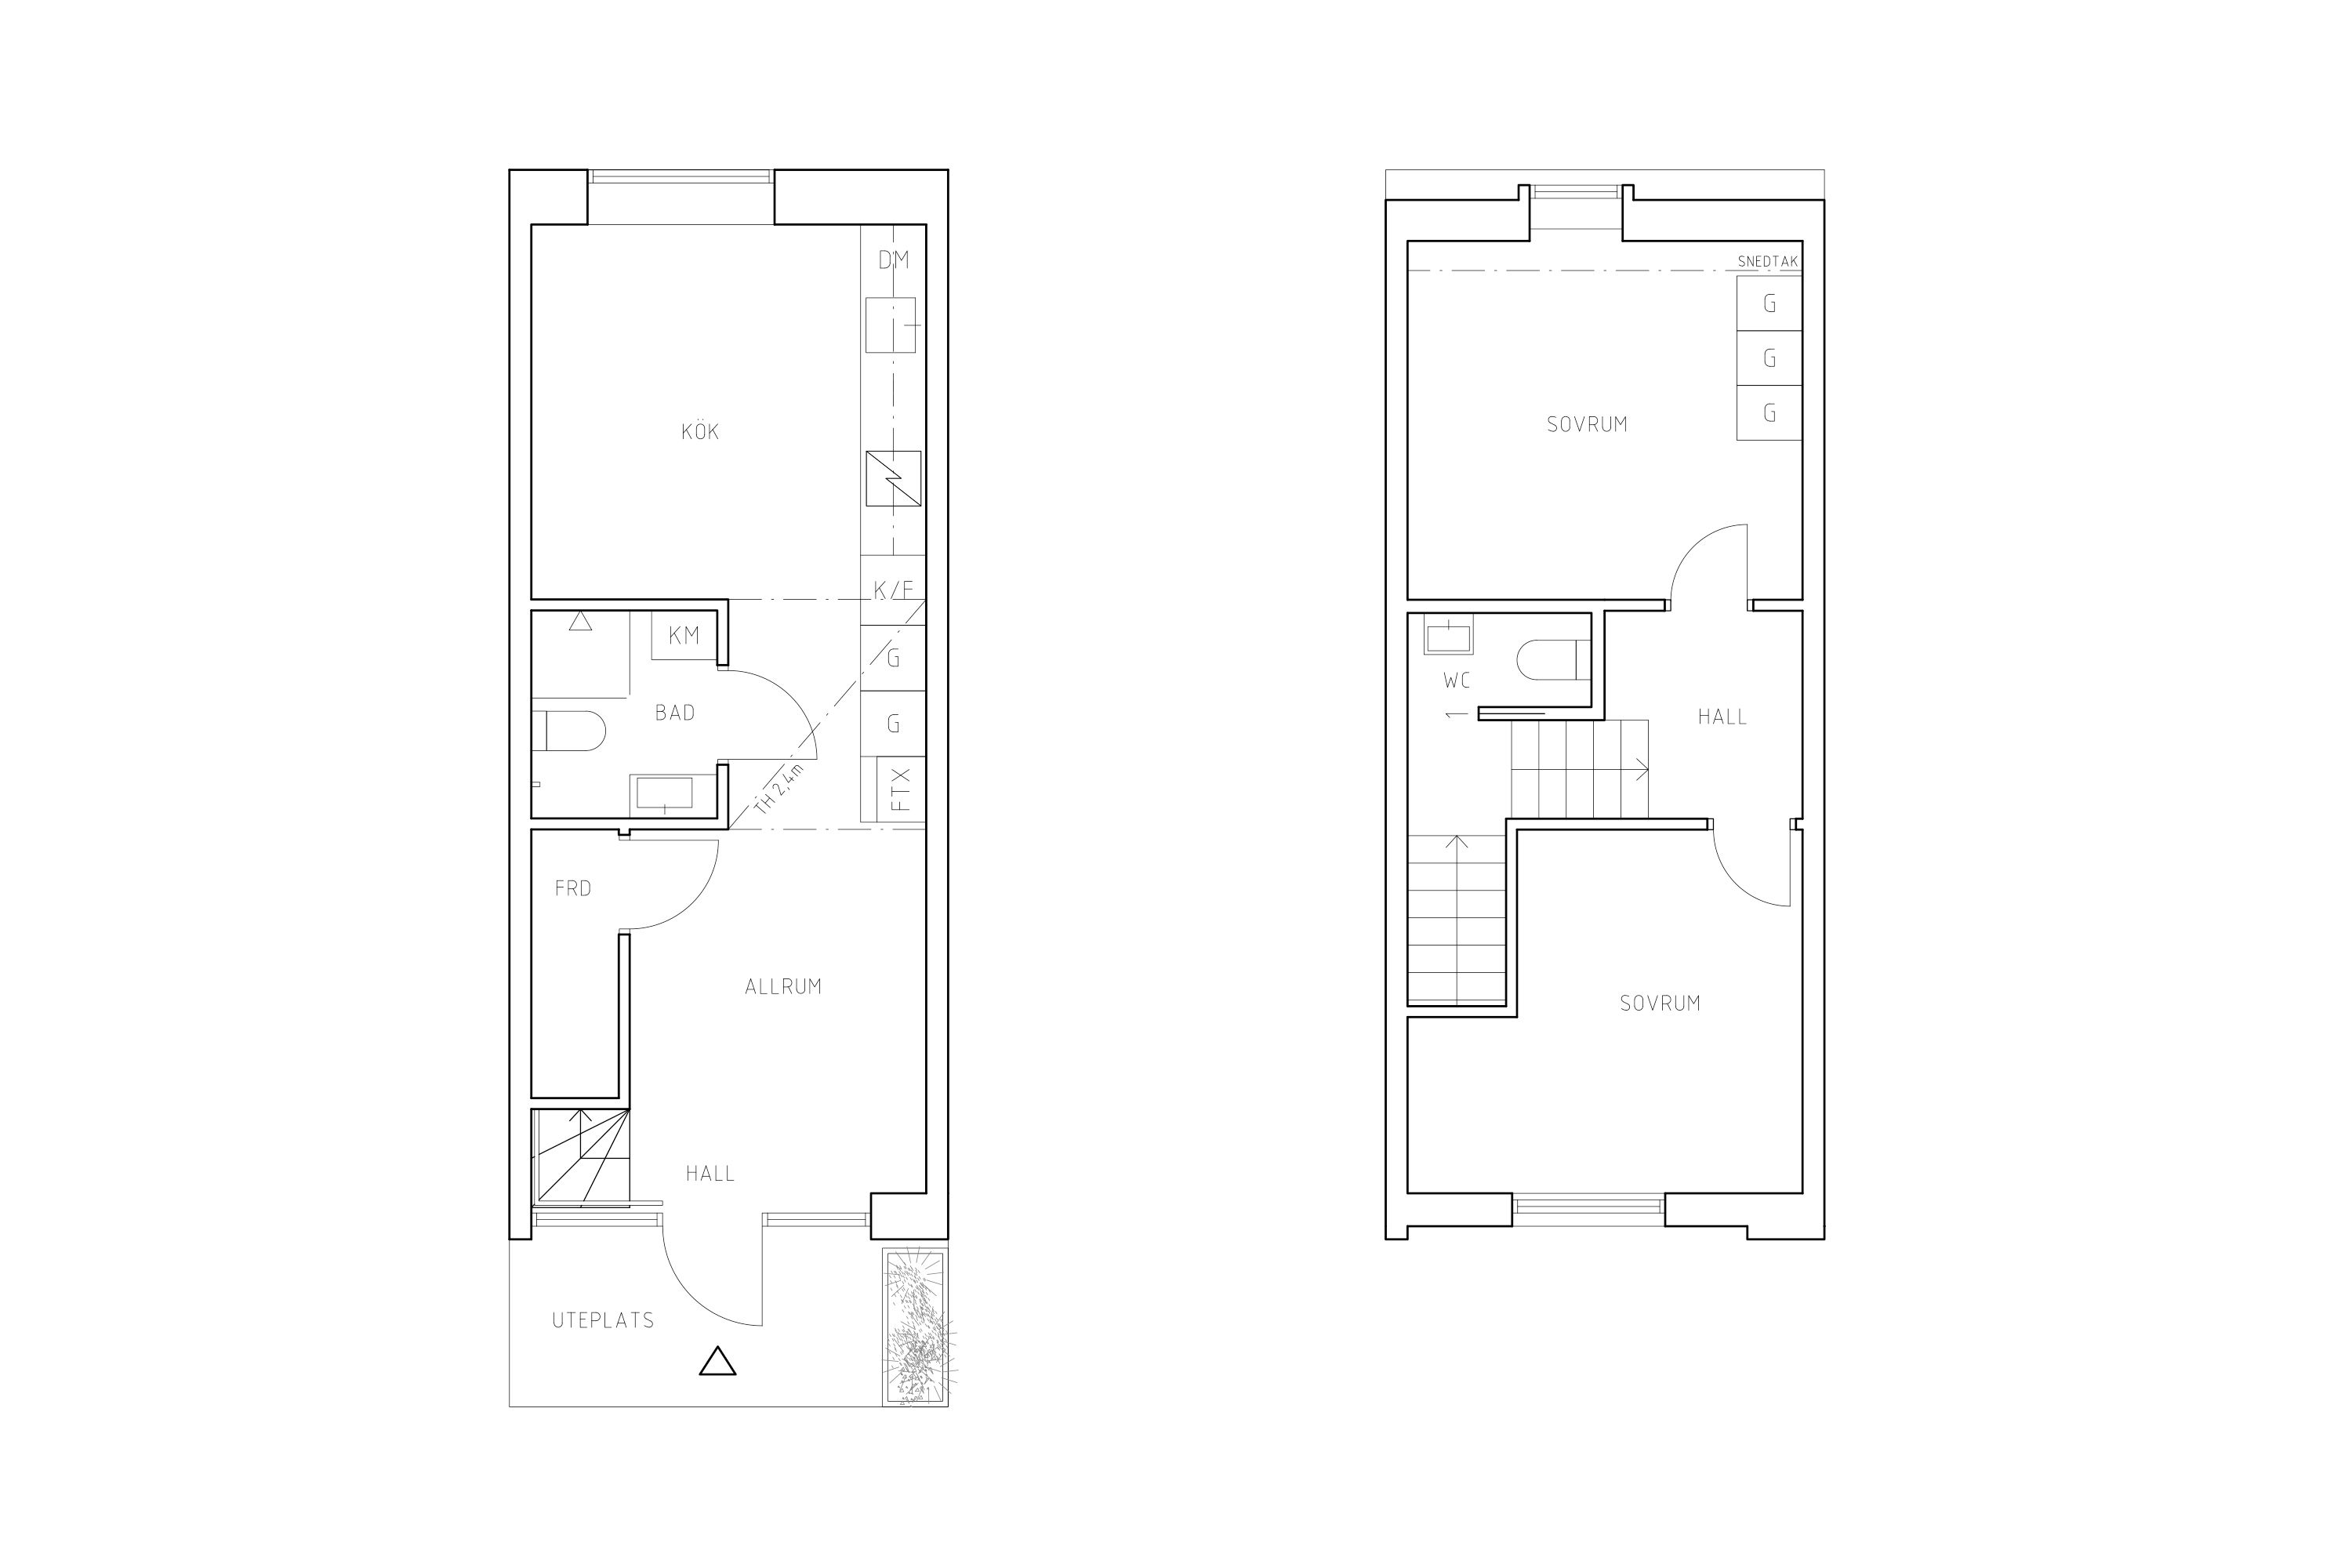 Planritning lägenhet 1001 A